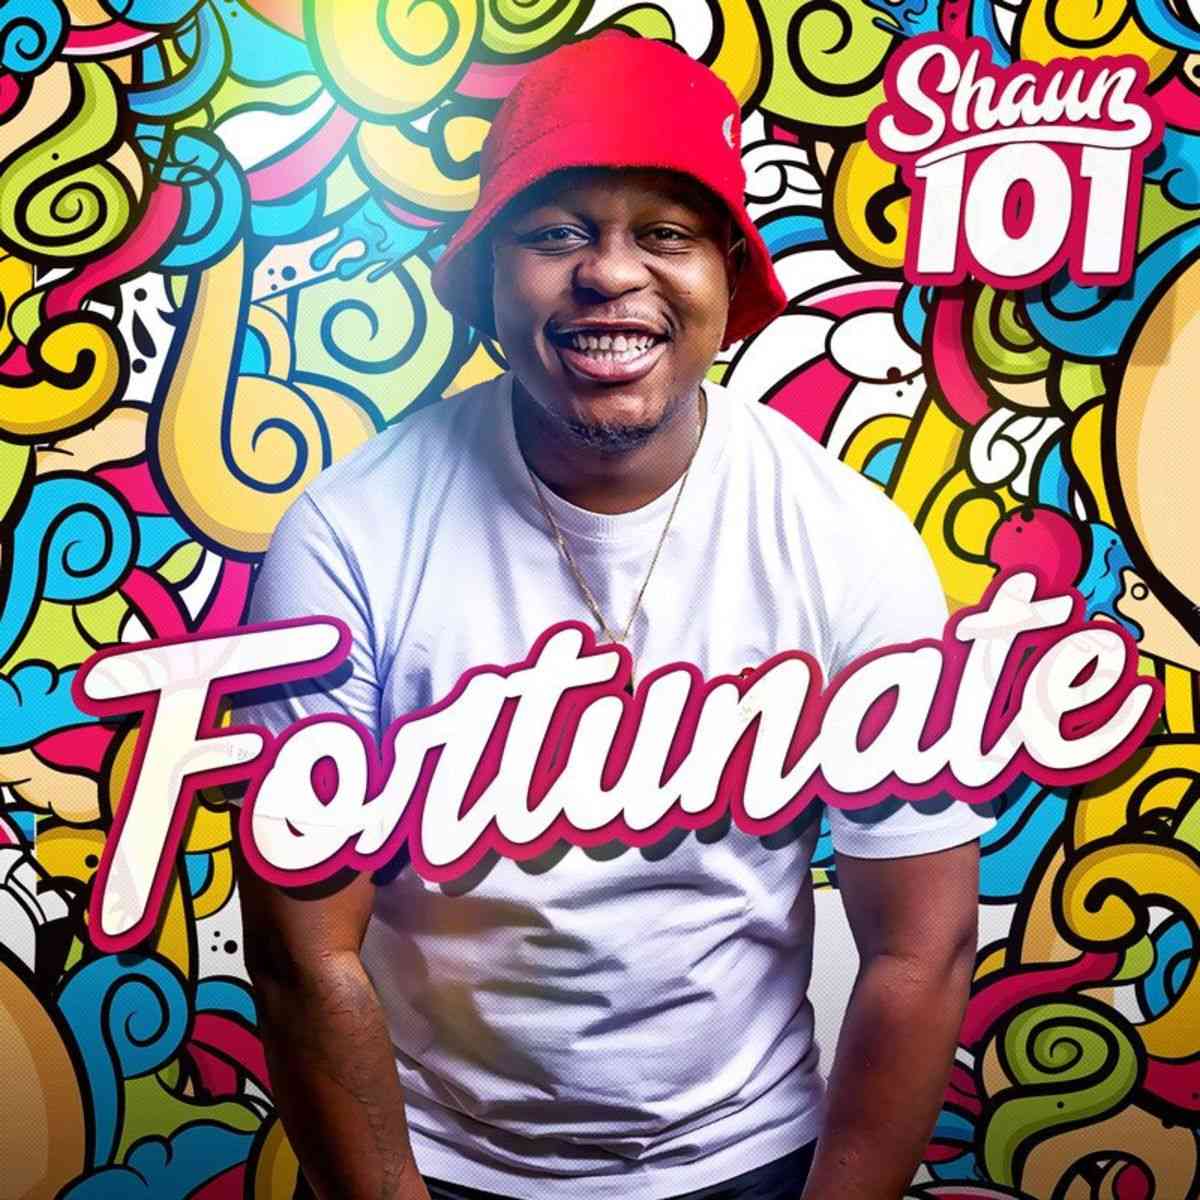 Shaun 101 - Fortunate Album